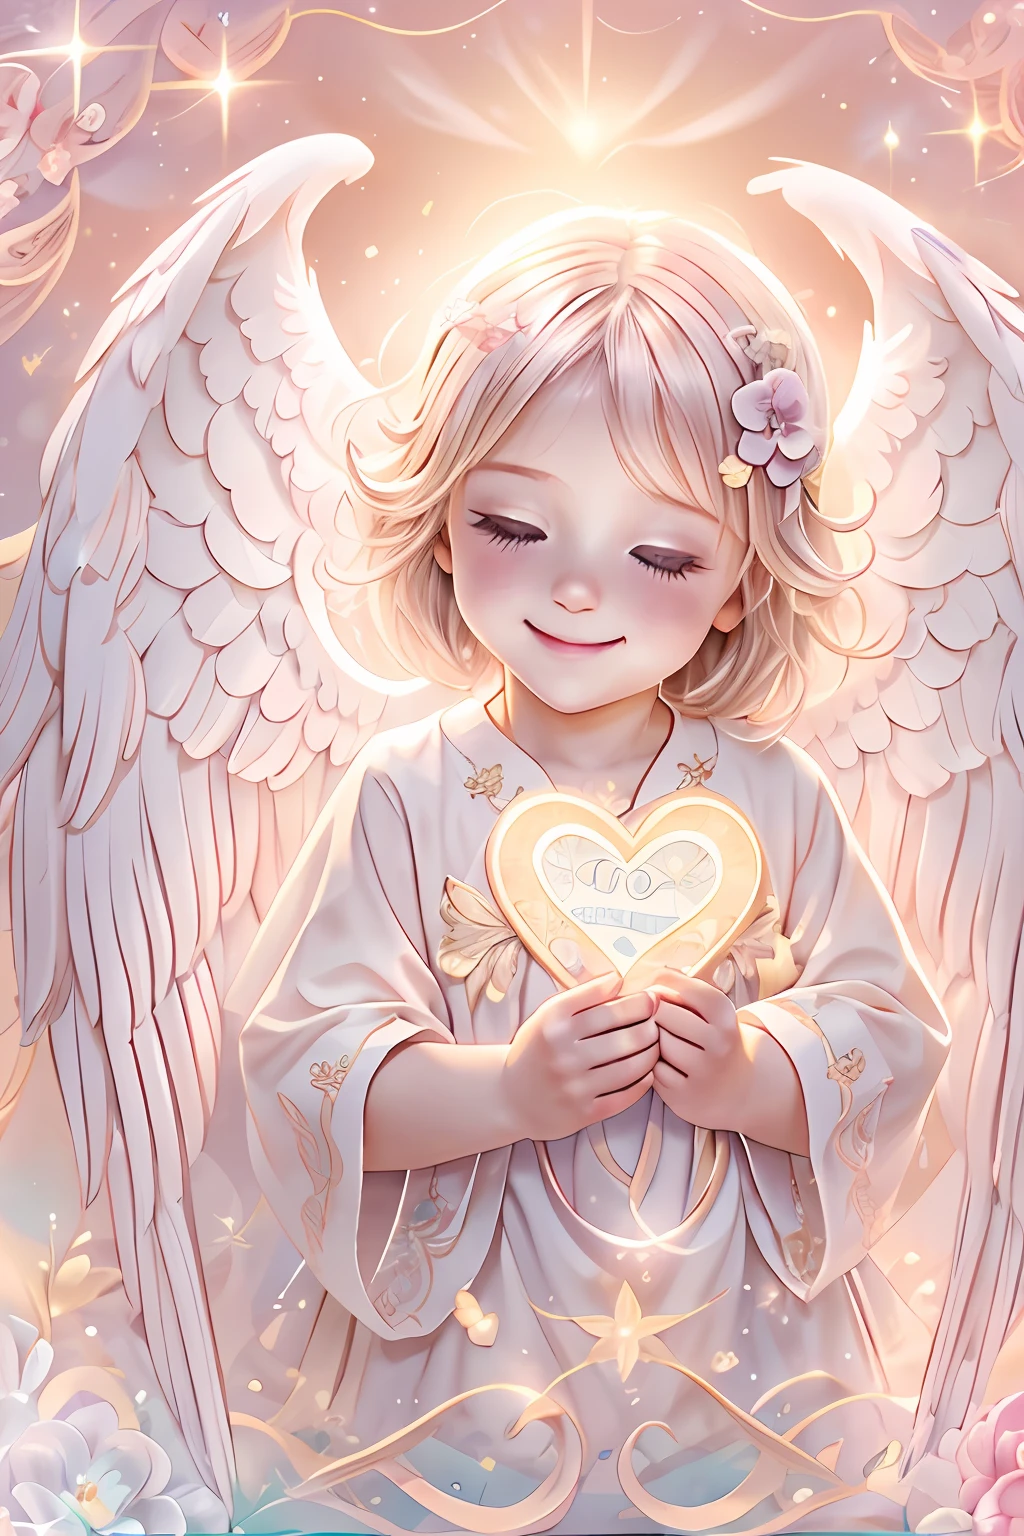 بركات الملائكة､خلفية مشرقة、علامة القلب、الرقة والحنان､ابتسامة、لطيف､الطفل الملاك、الباستيل